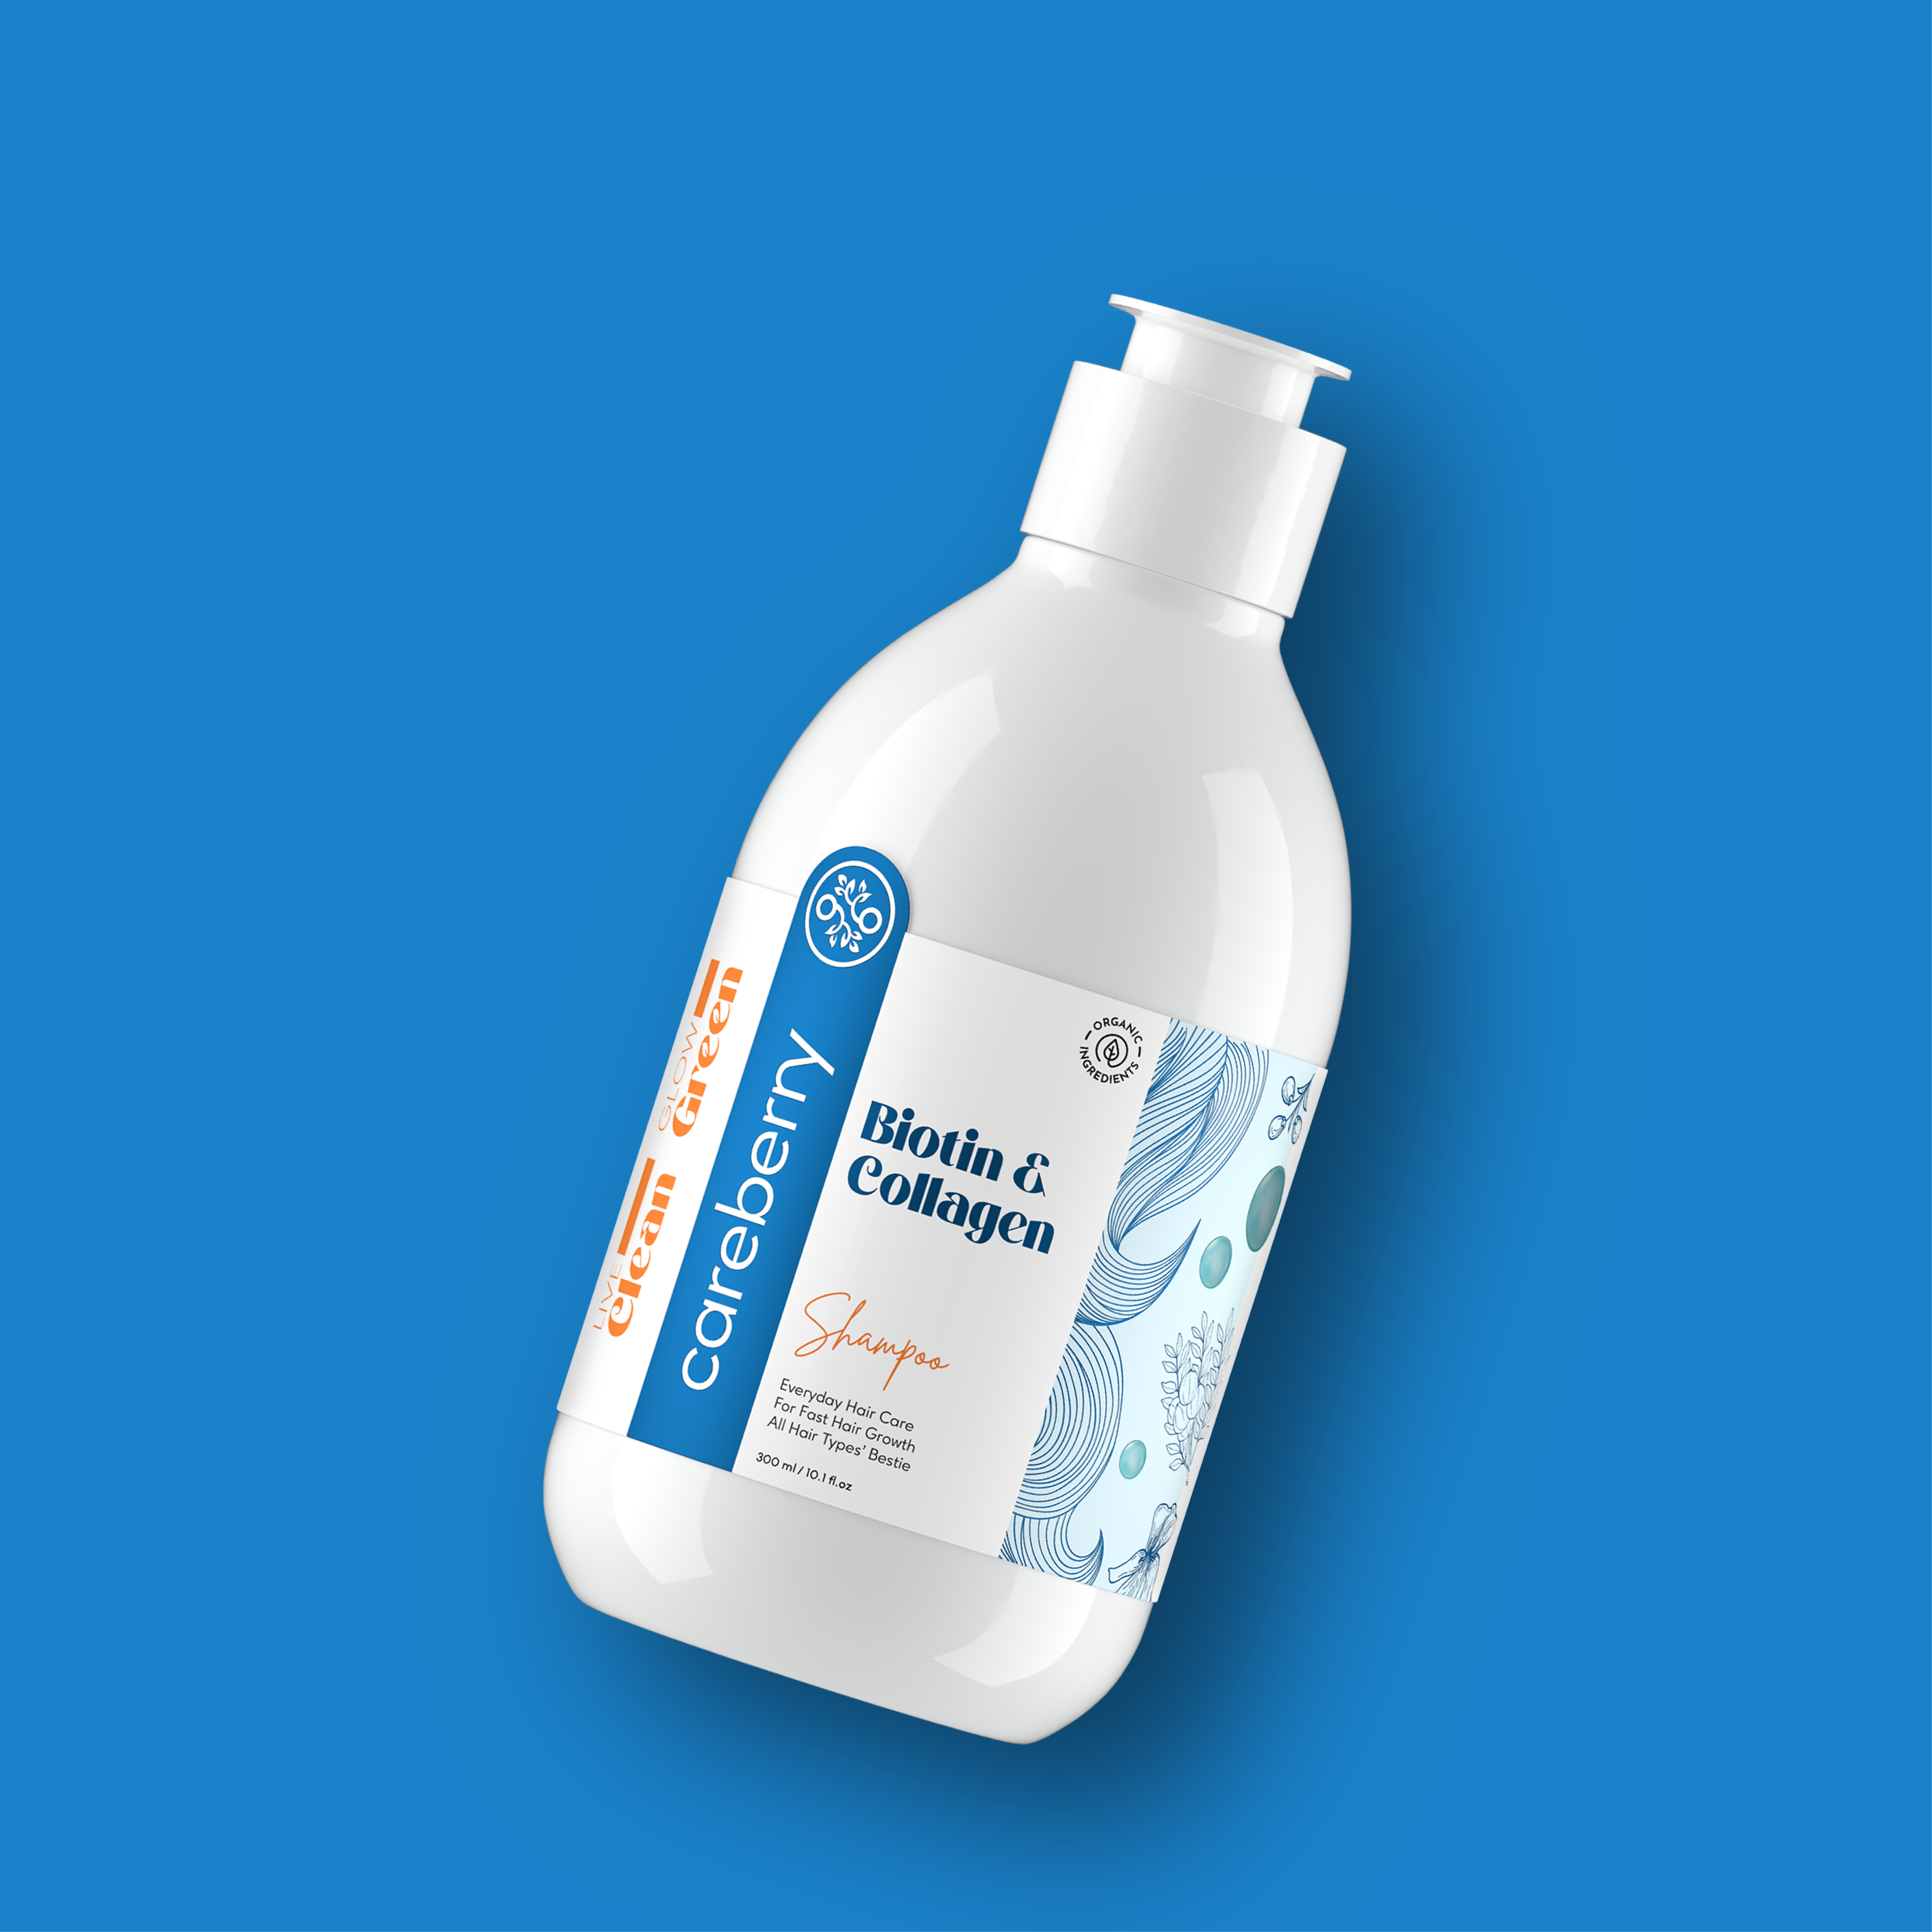 Biotin & Collagen Everyday Shampoo